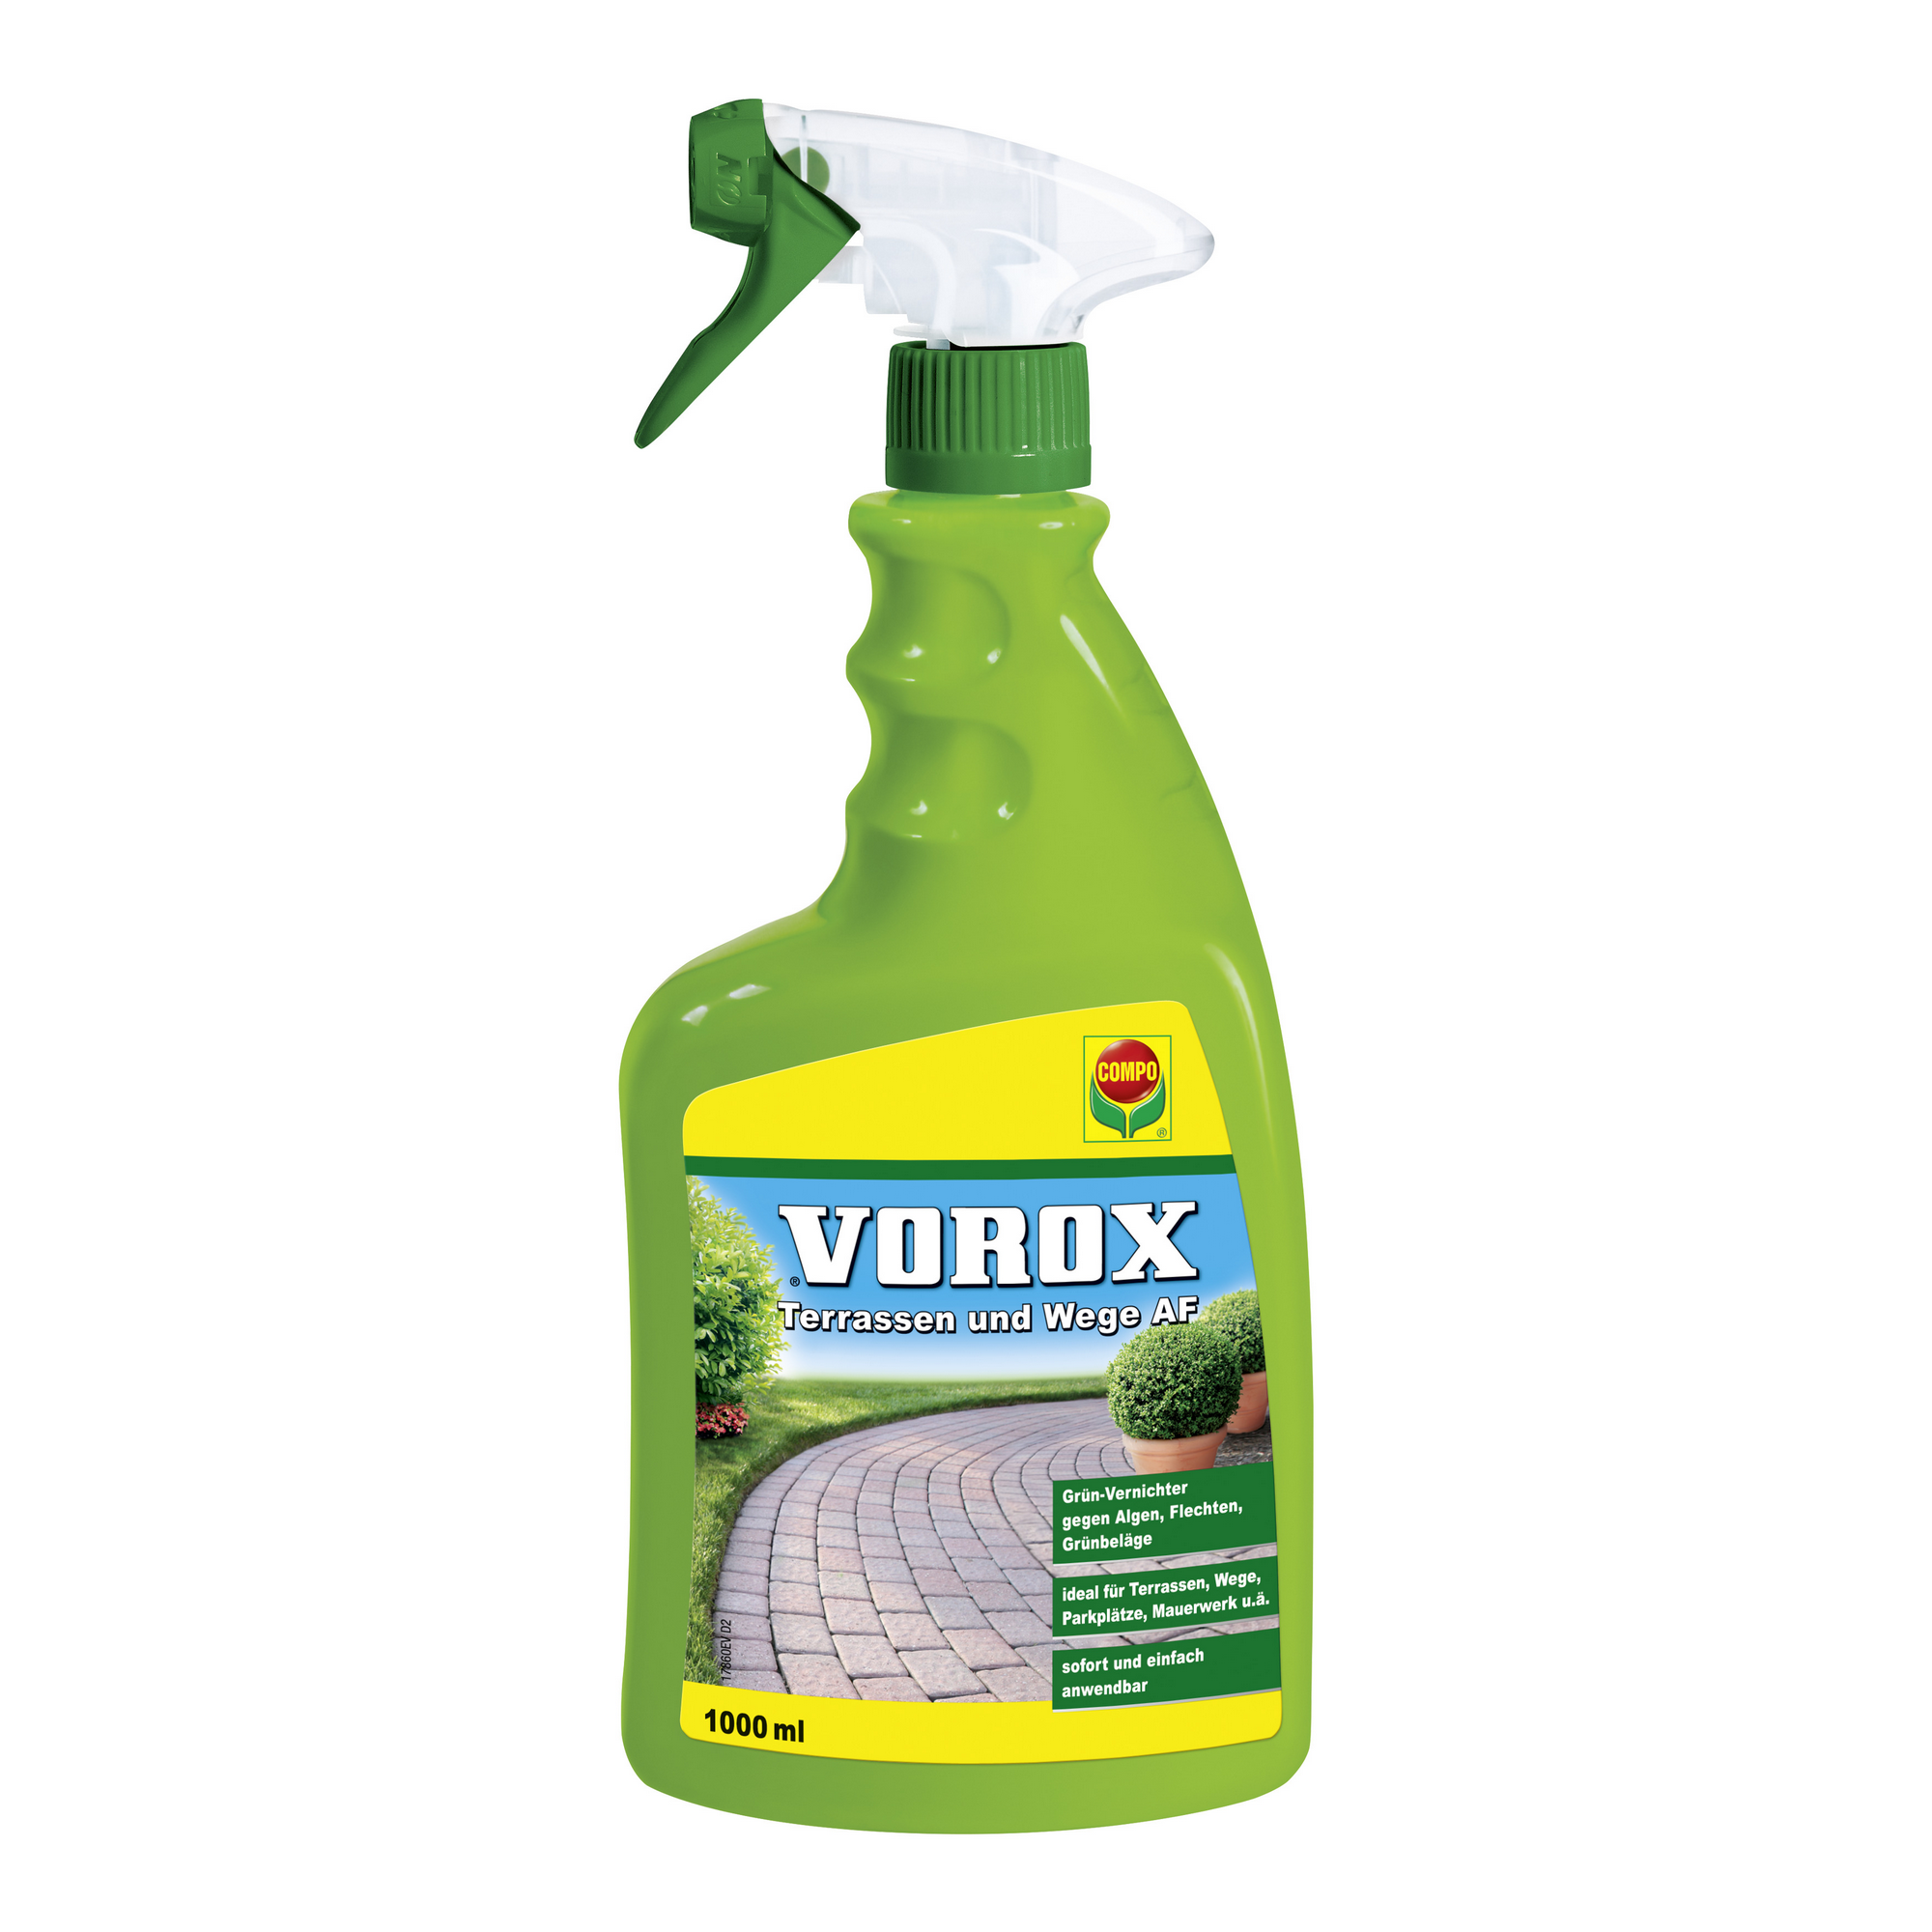 Vorox® Terrassen und Wege AF 1000 ml + product picture